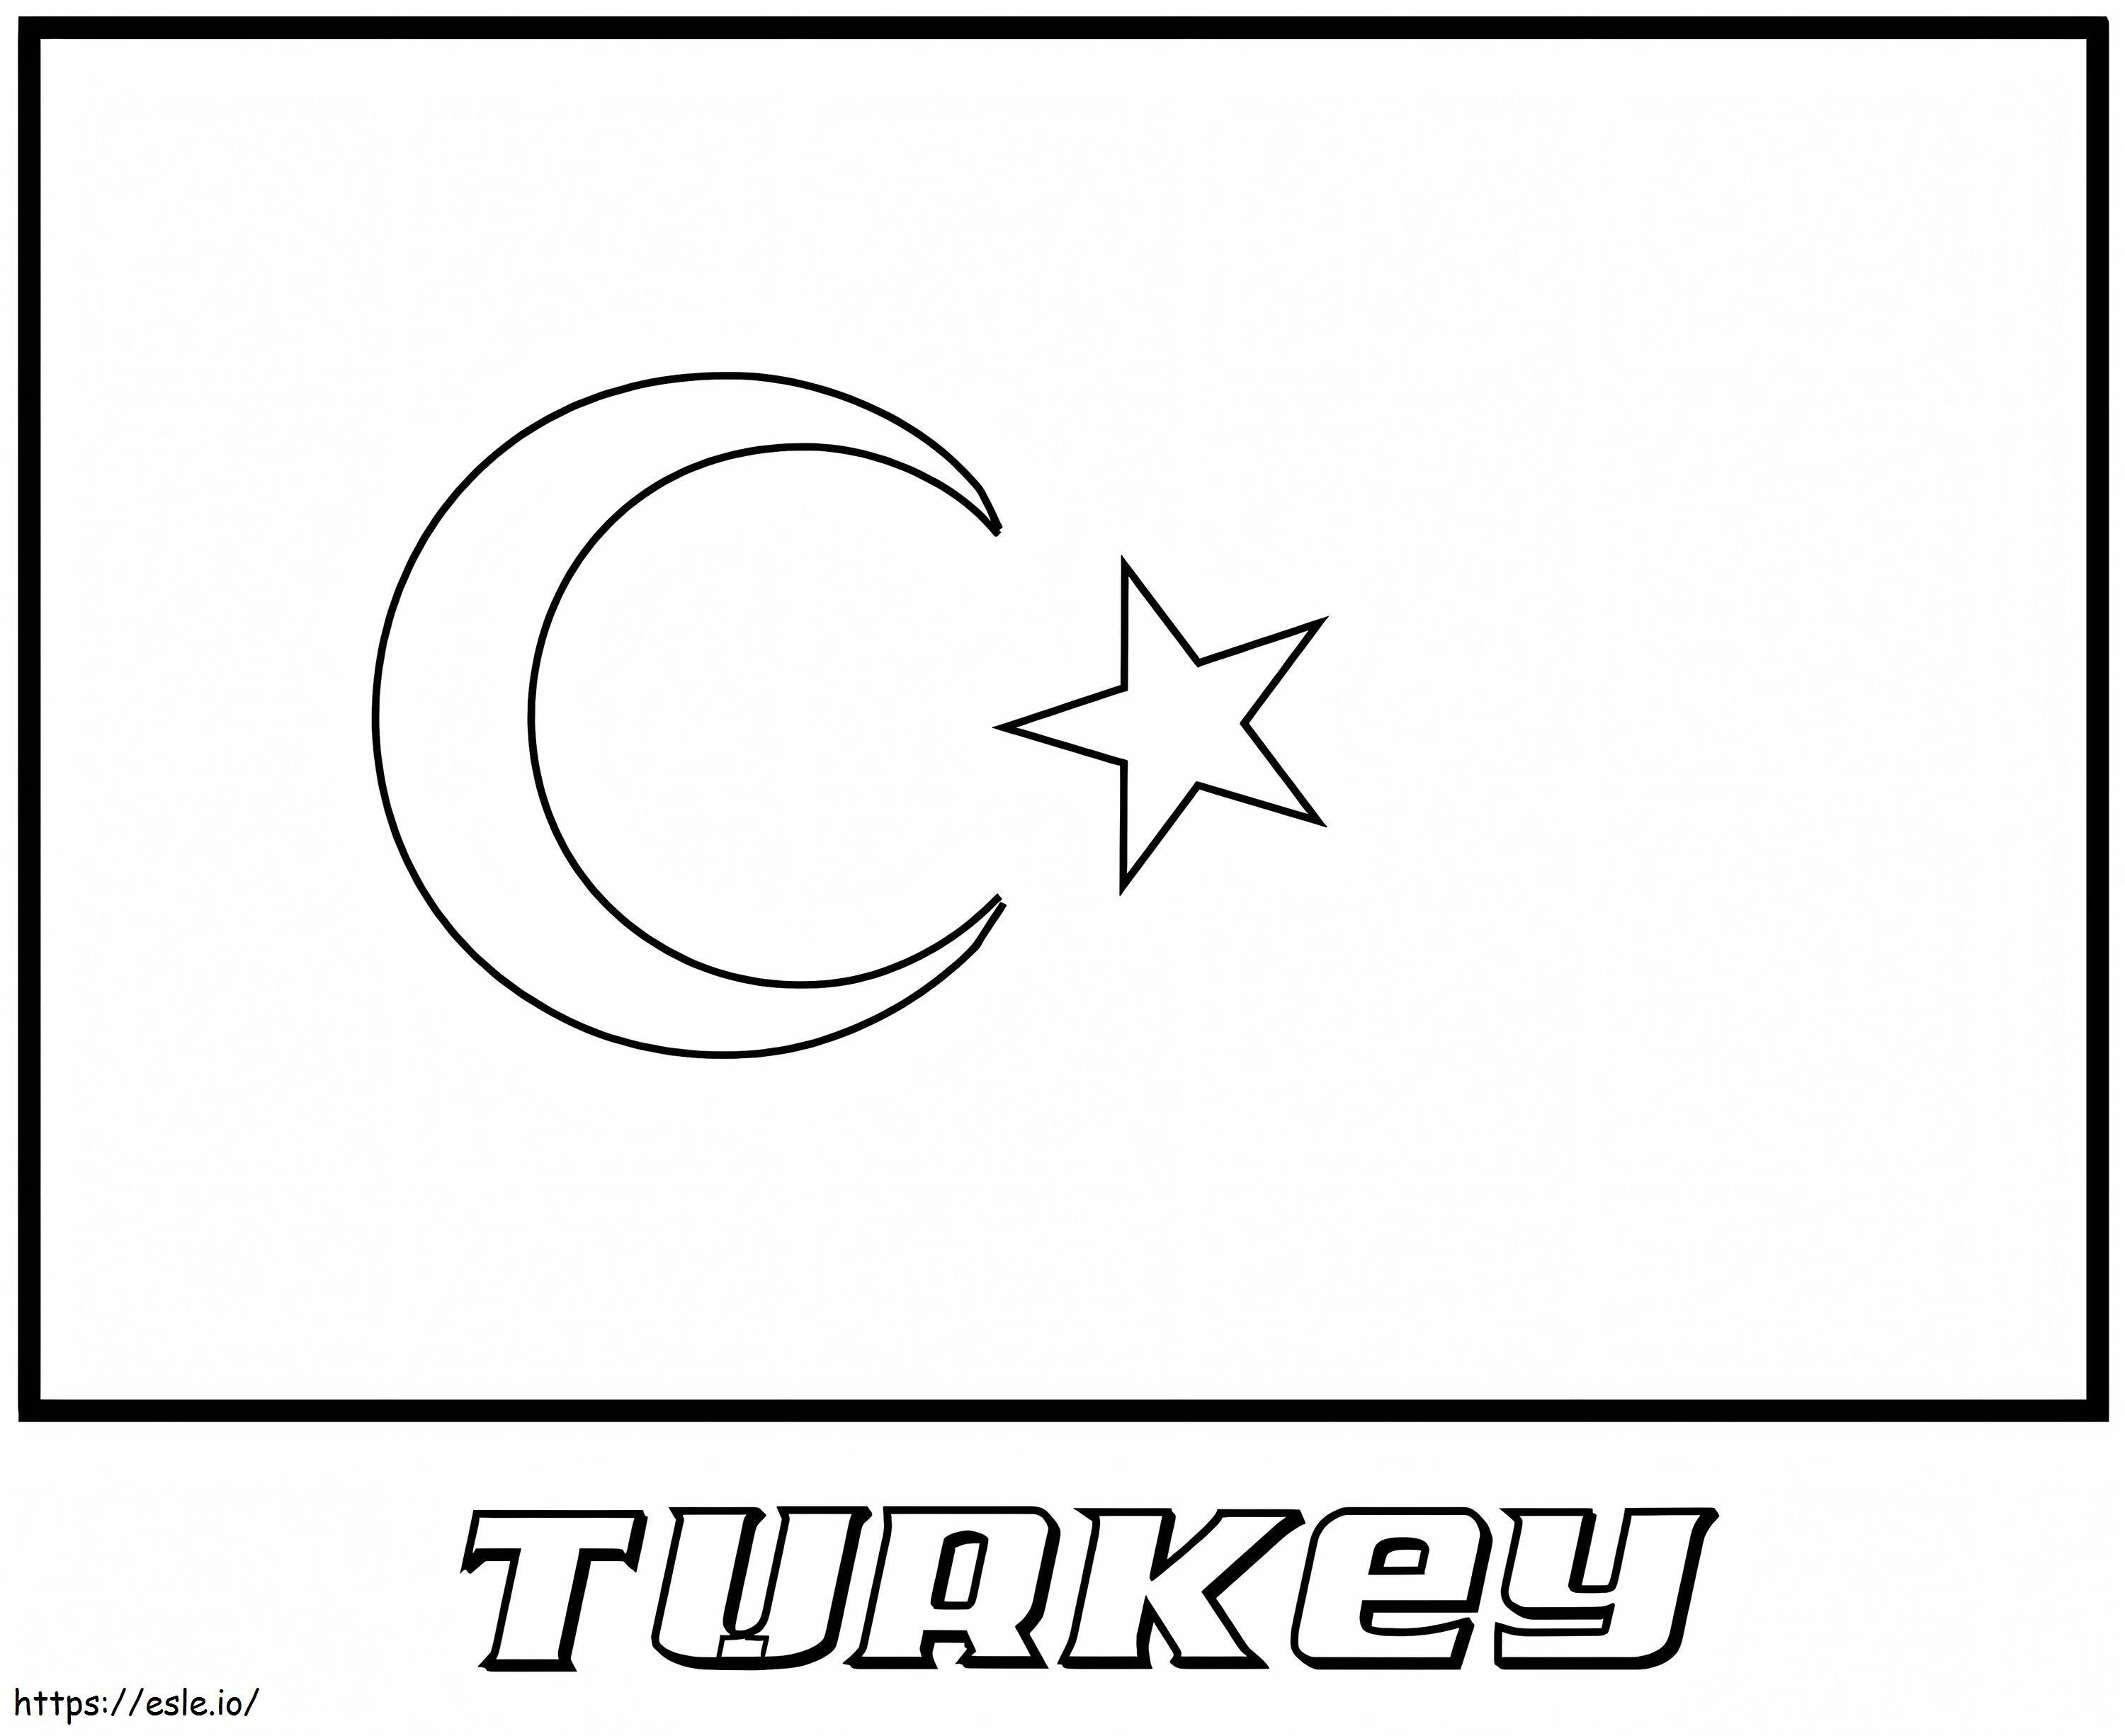 Törökország zászló kifestő